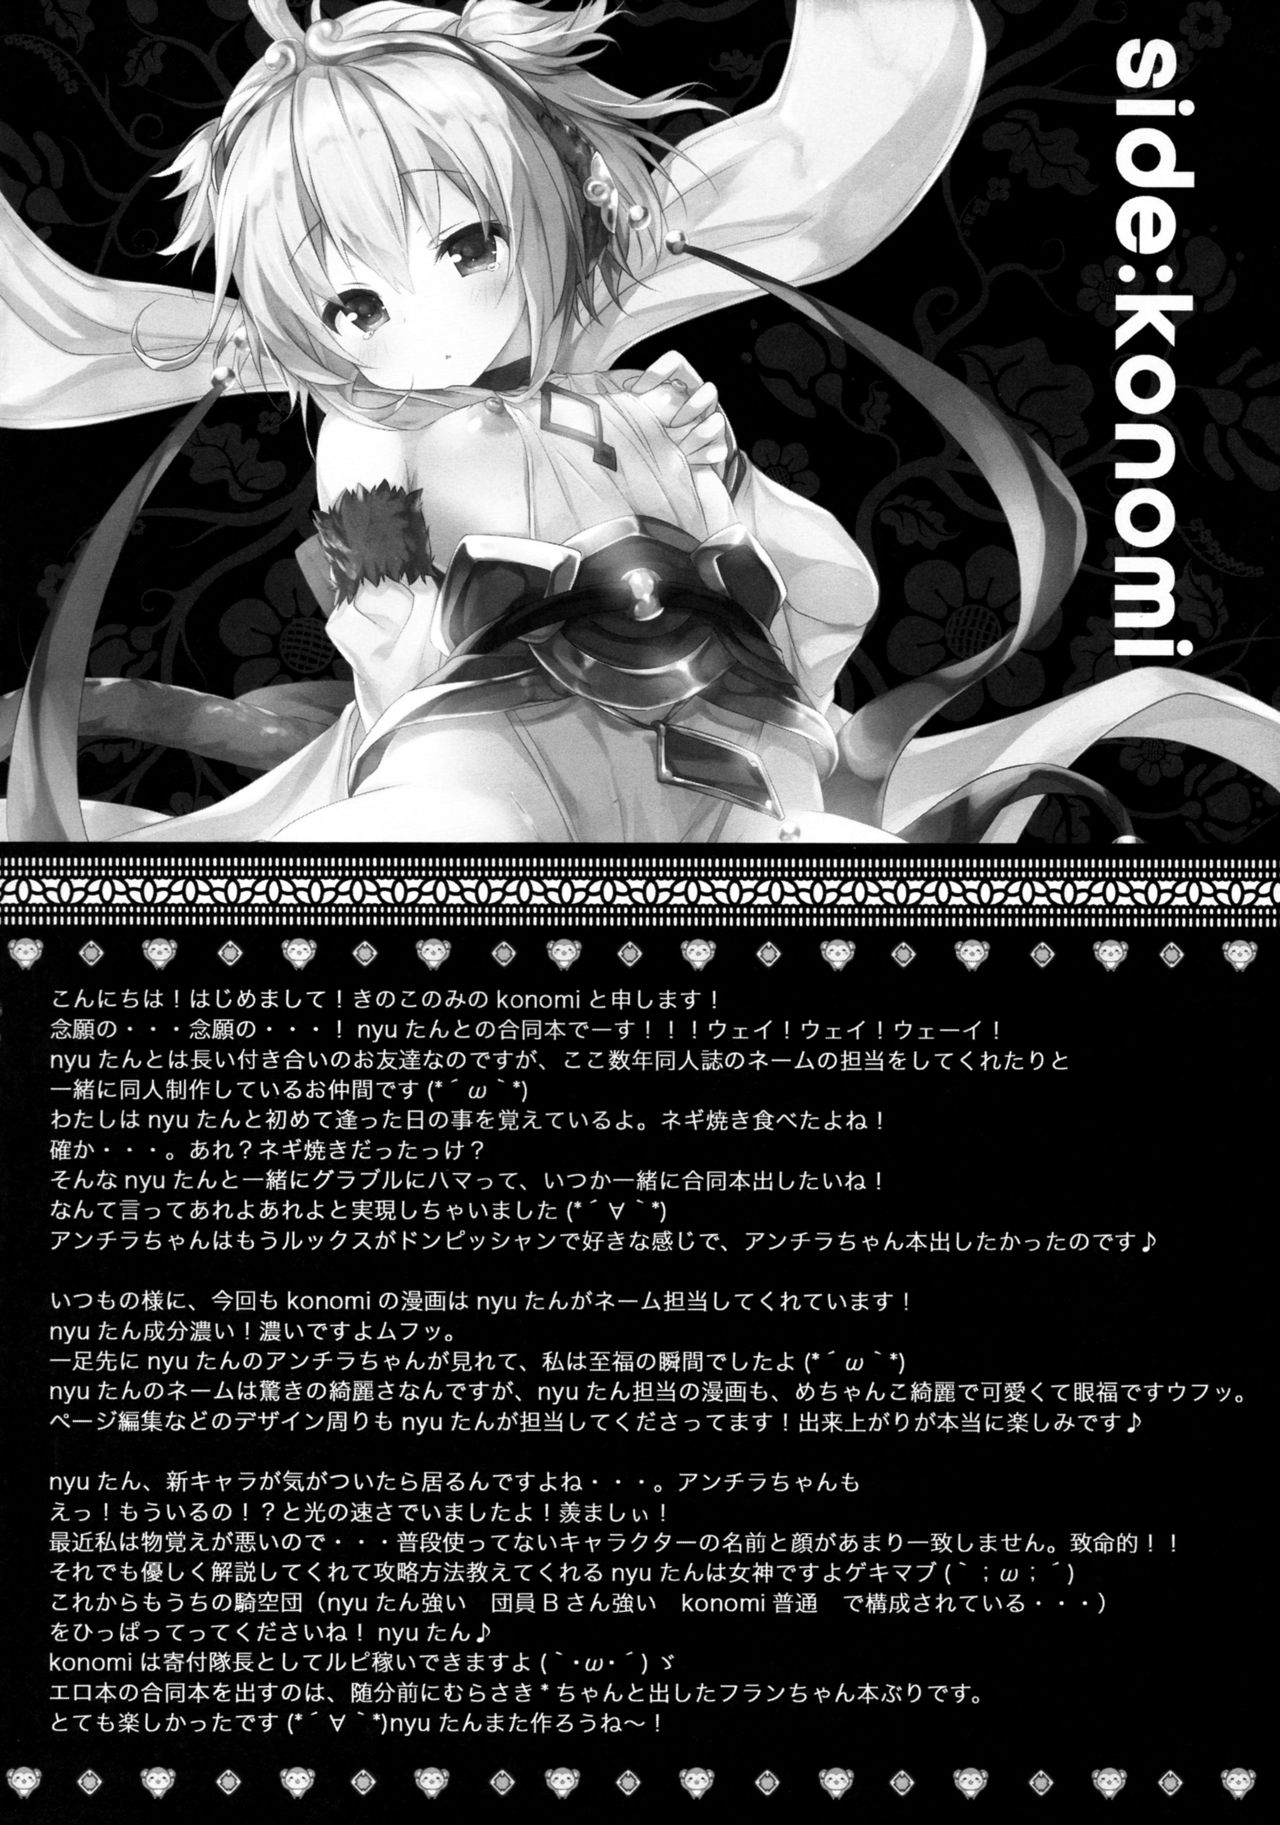 (COMIC1☆10) [Kinokonomi, brand nyu (konomi, nyu)] Andira Panpan (Granblue Fantasy) [Chinese] [想抱雷妈汉化组] (COMIC1☆10) [きのこのみ、brand nyu (konomi、nyu)] アンチラぱんぱん (グランブルーファンタジー) [中国翻訳]